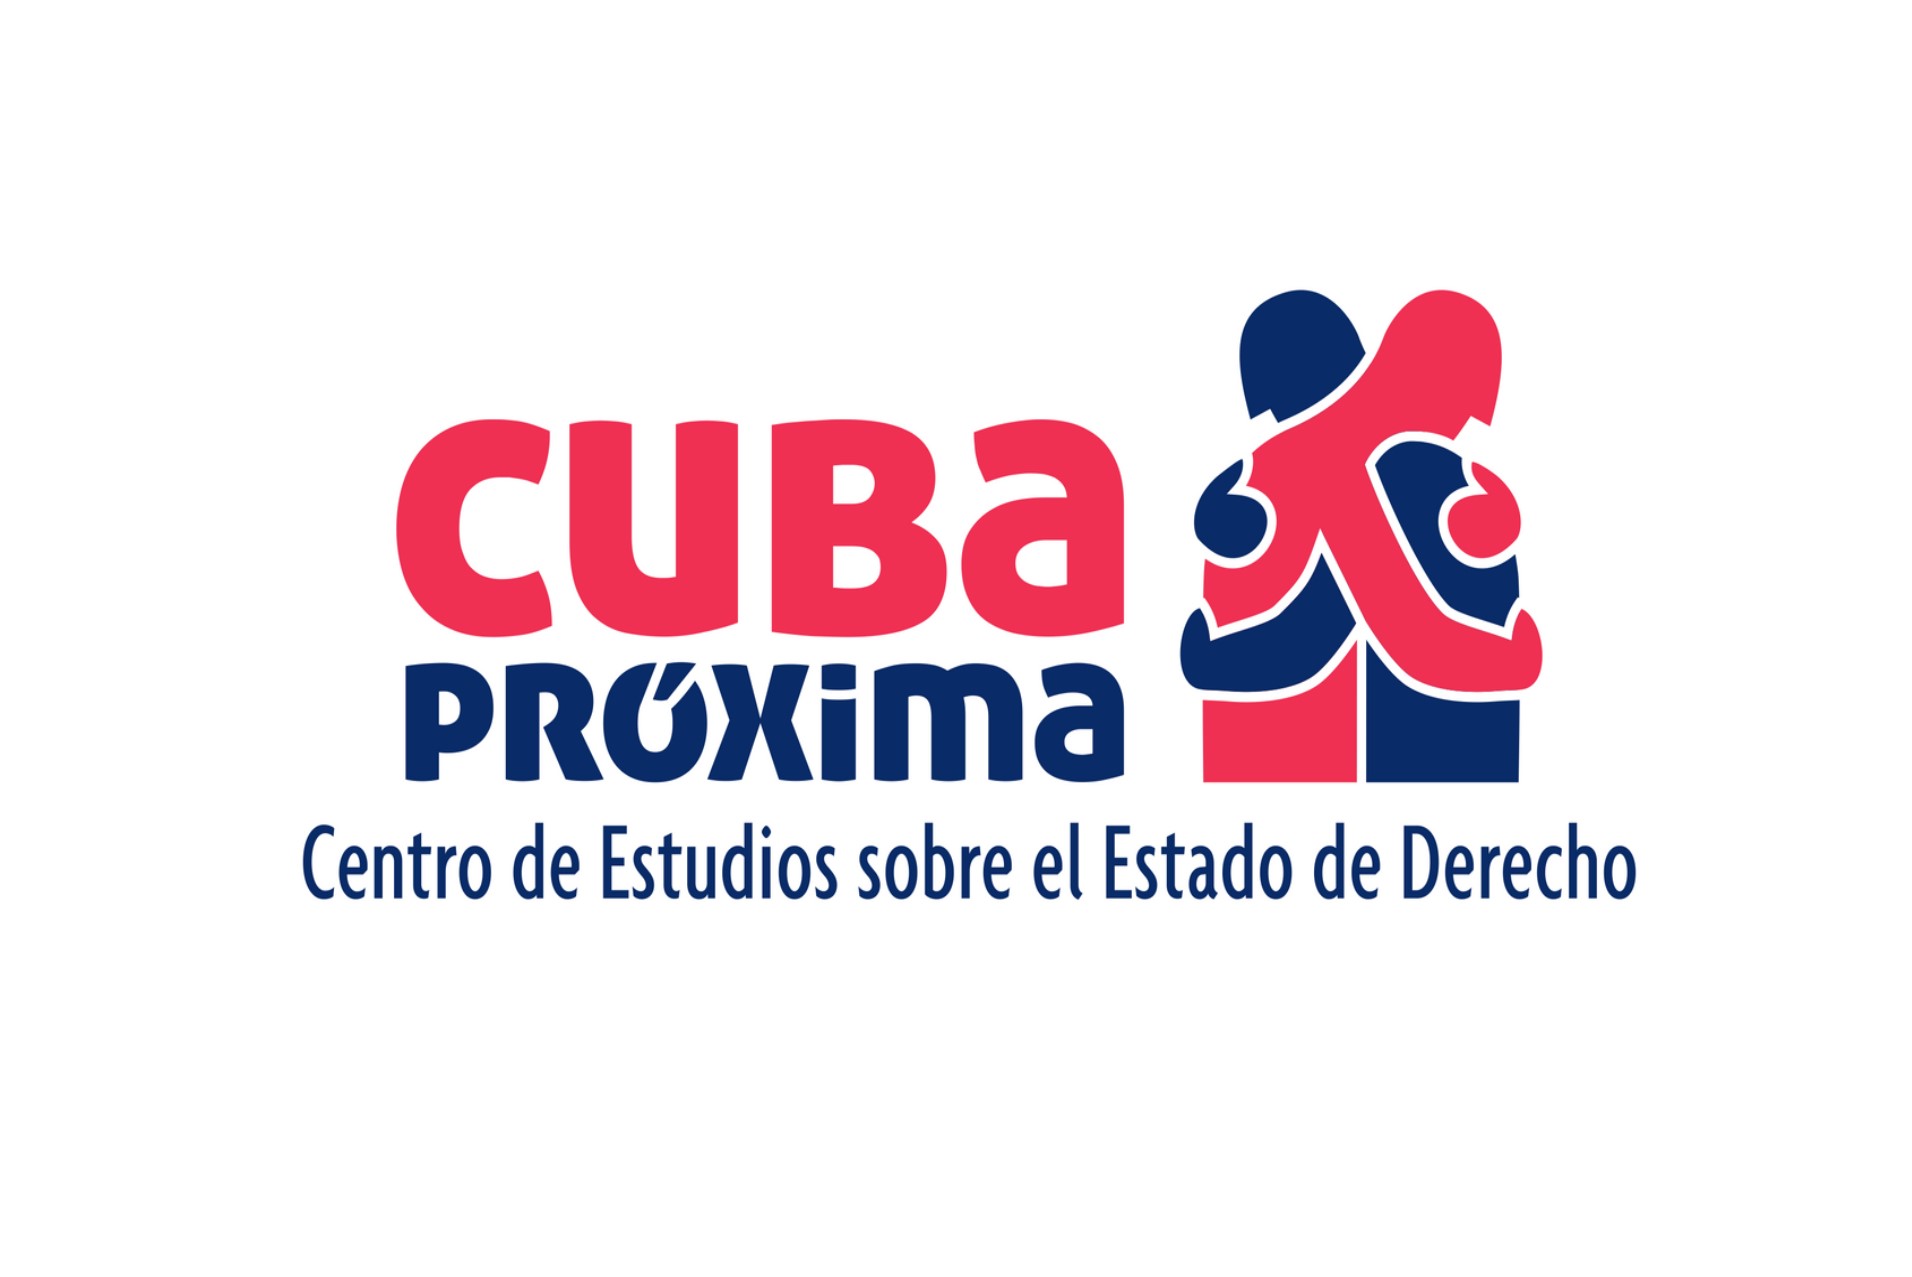 Las relaciones Cuba-EE. UU. Una visión práctica y ética